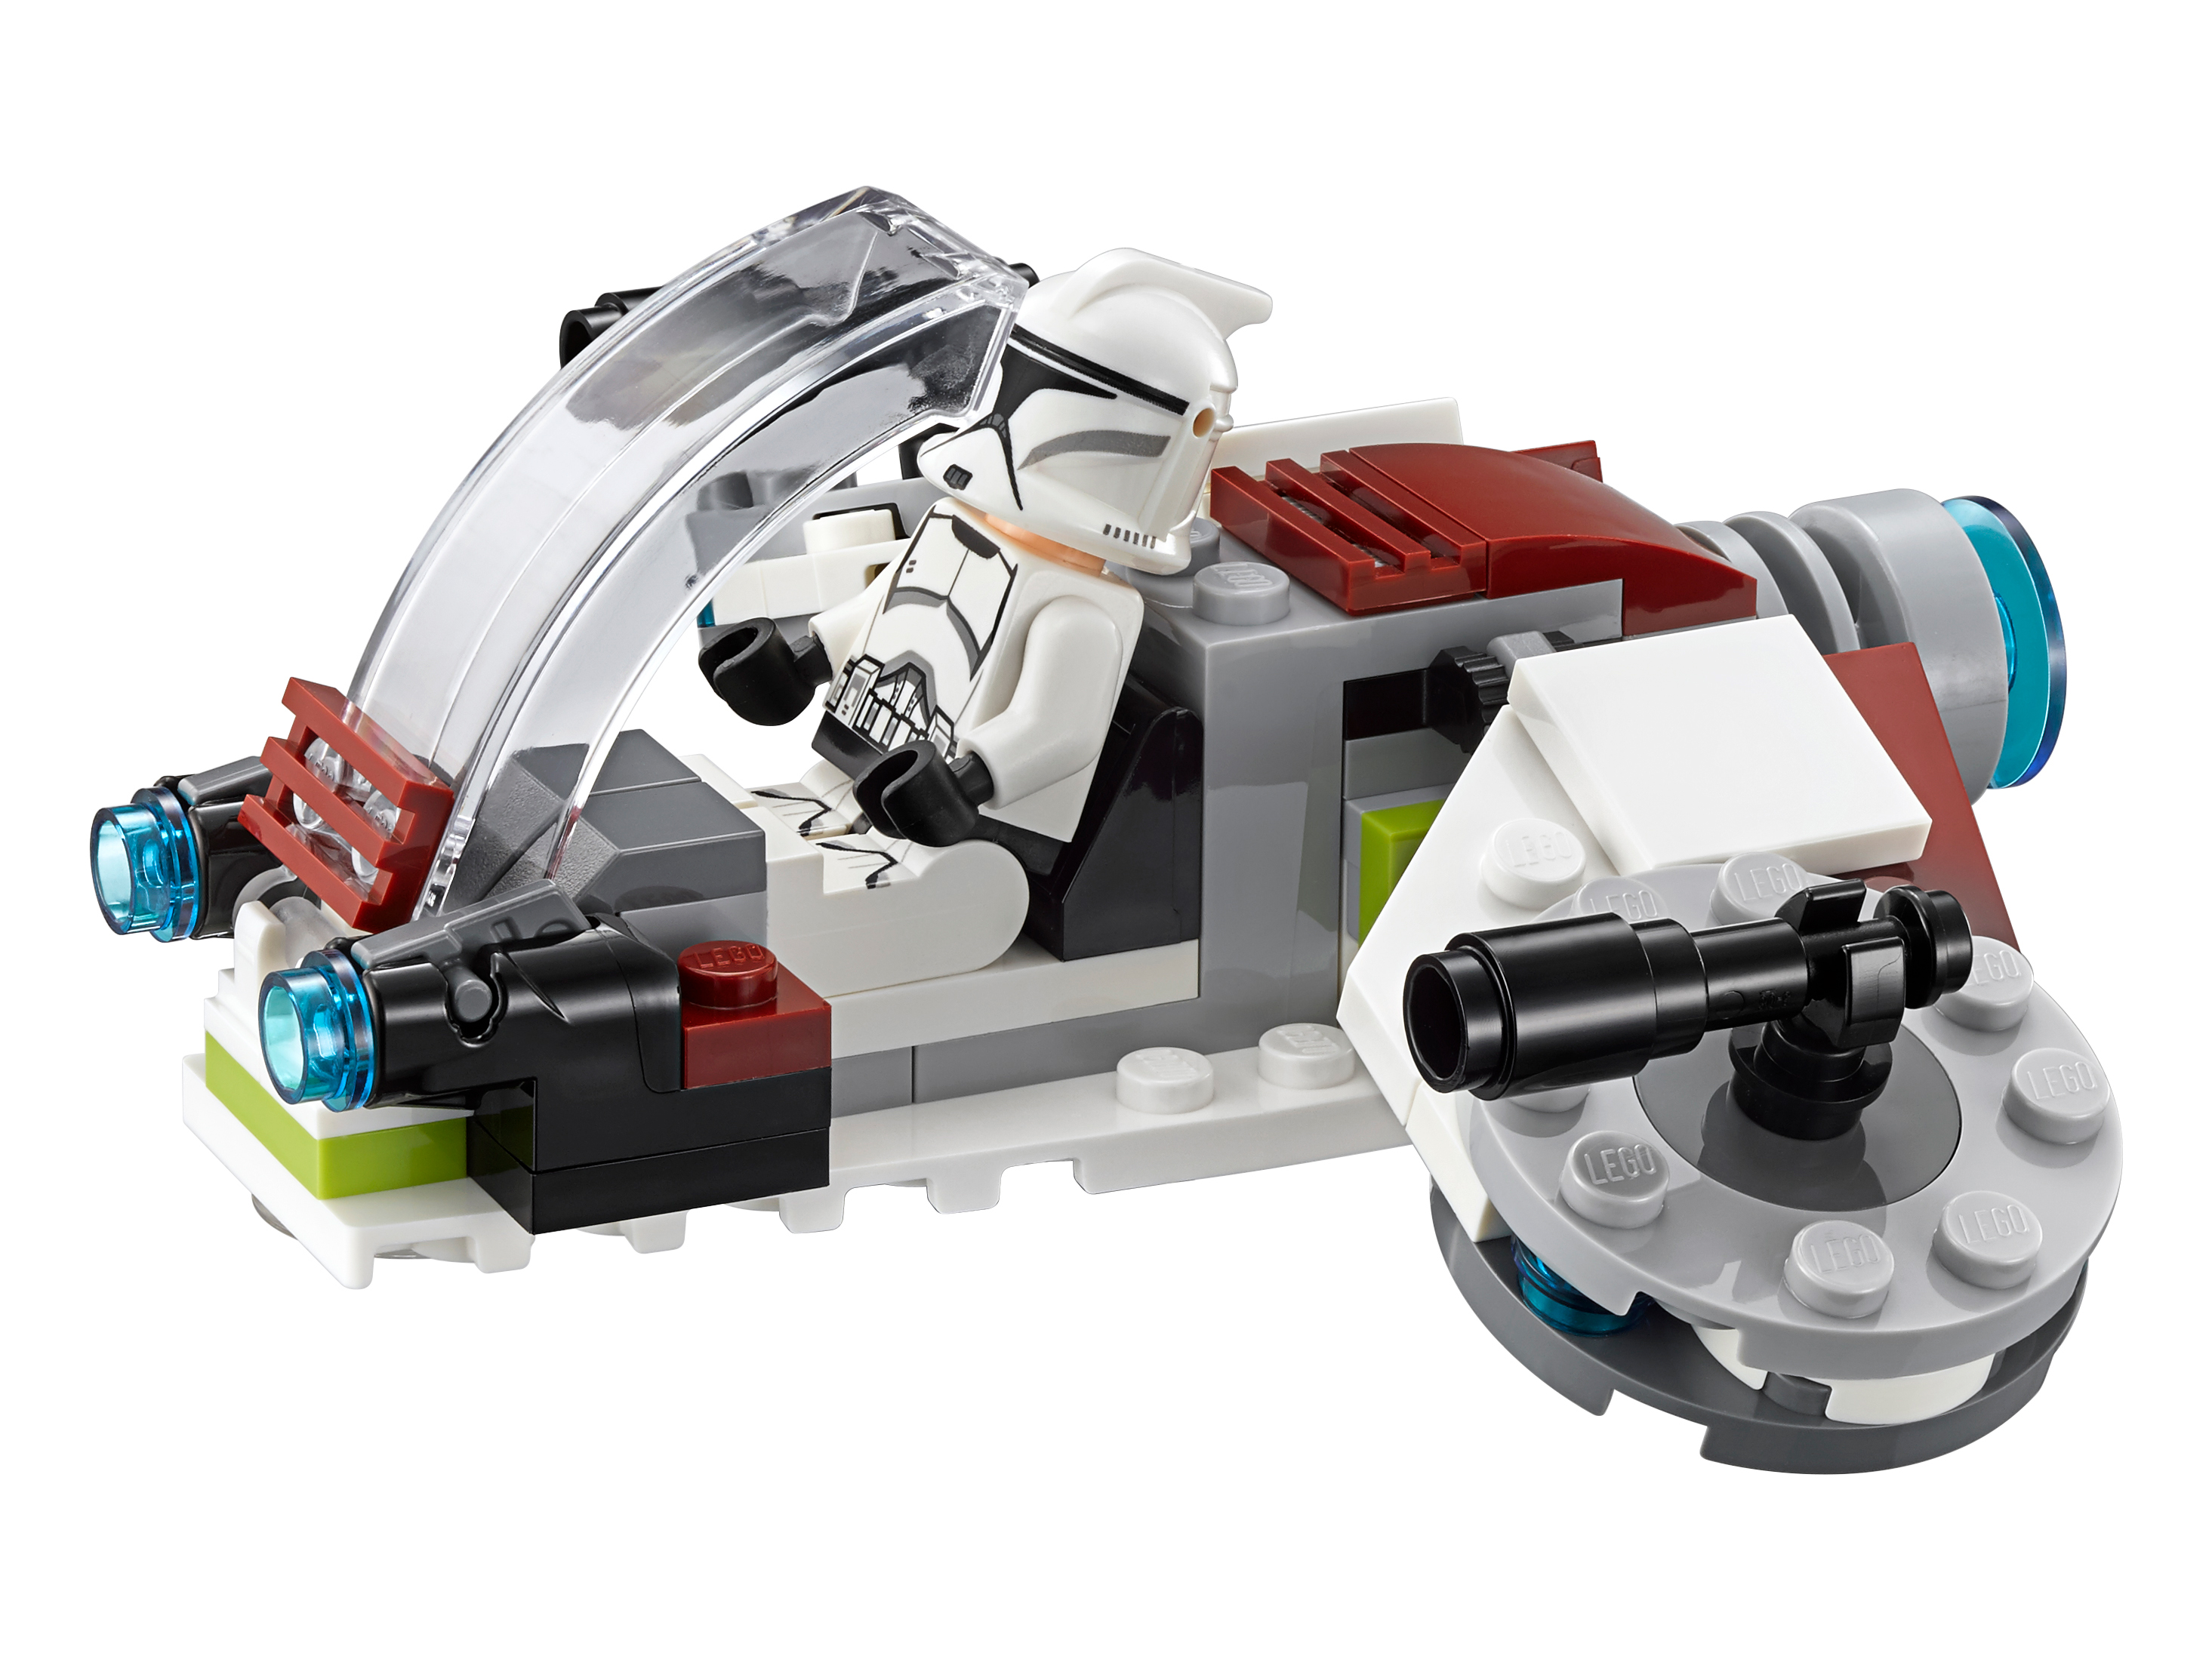 Конструктор LEGO 75206 Star Wars Боевой набор джедаев и клонов-пехотинцев